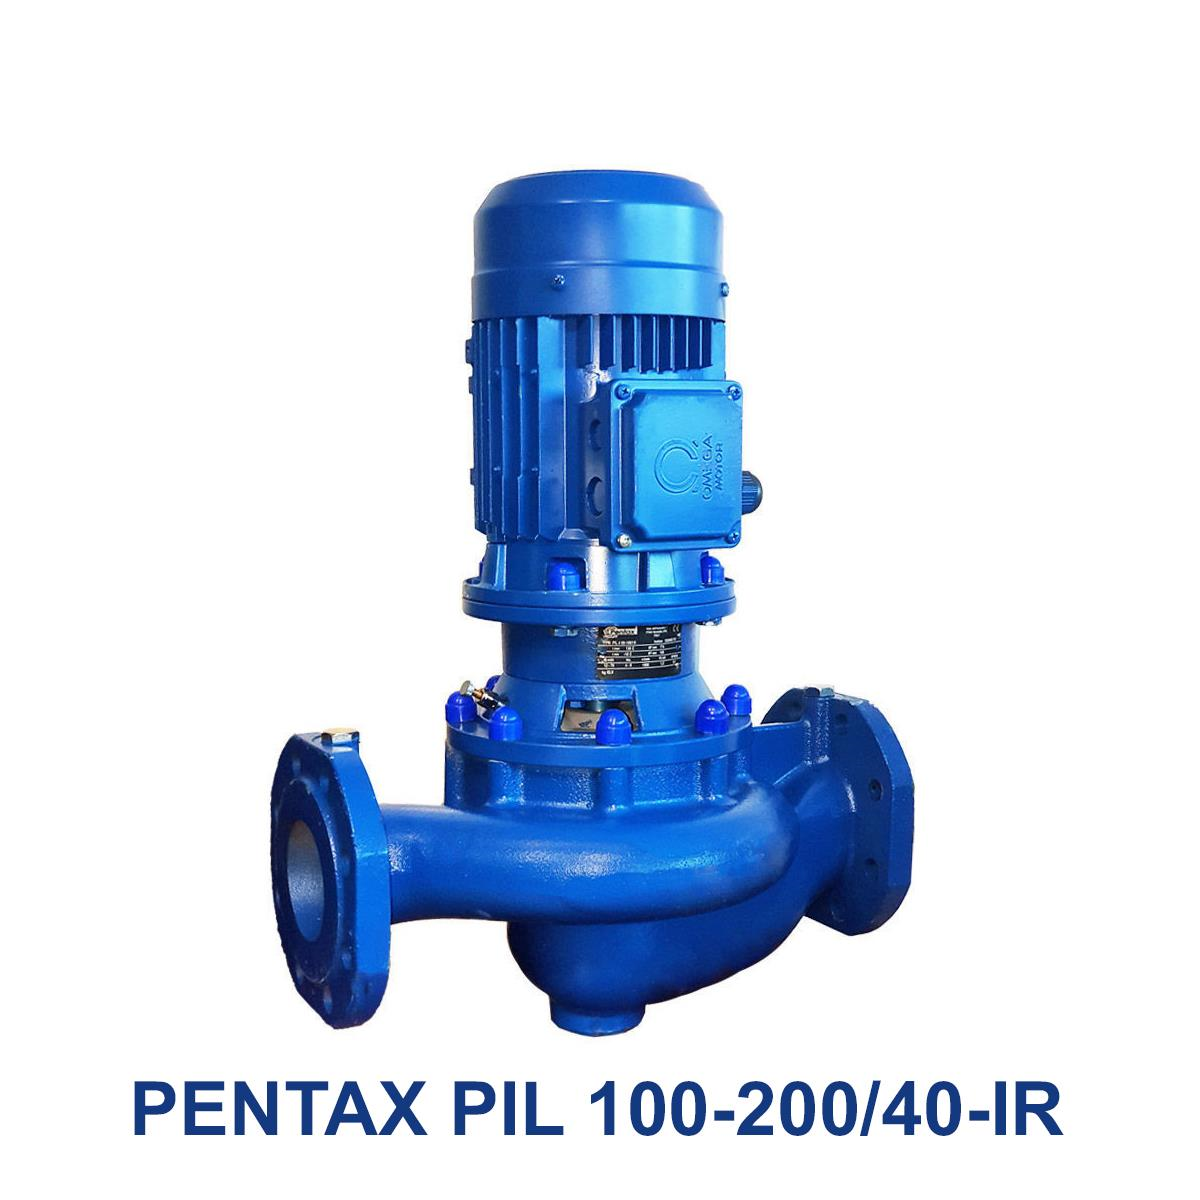 PENTAX-PIL-100-200-40-IR